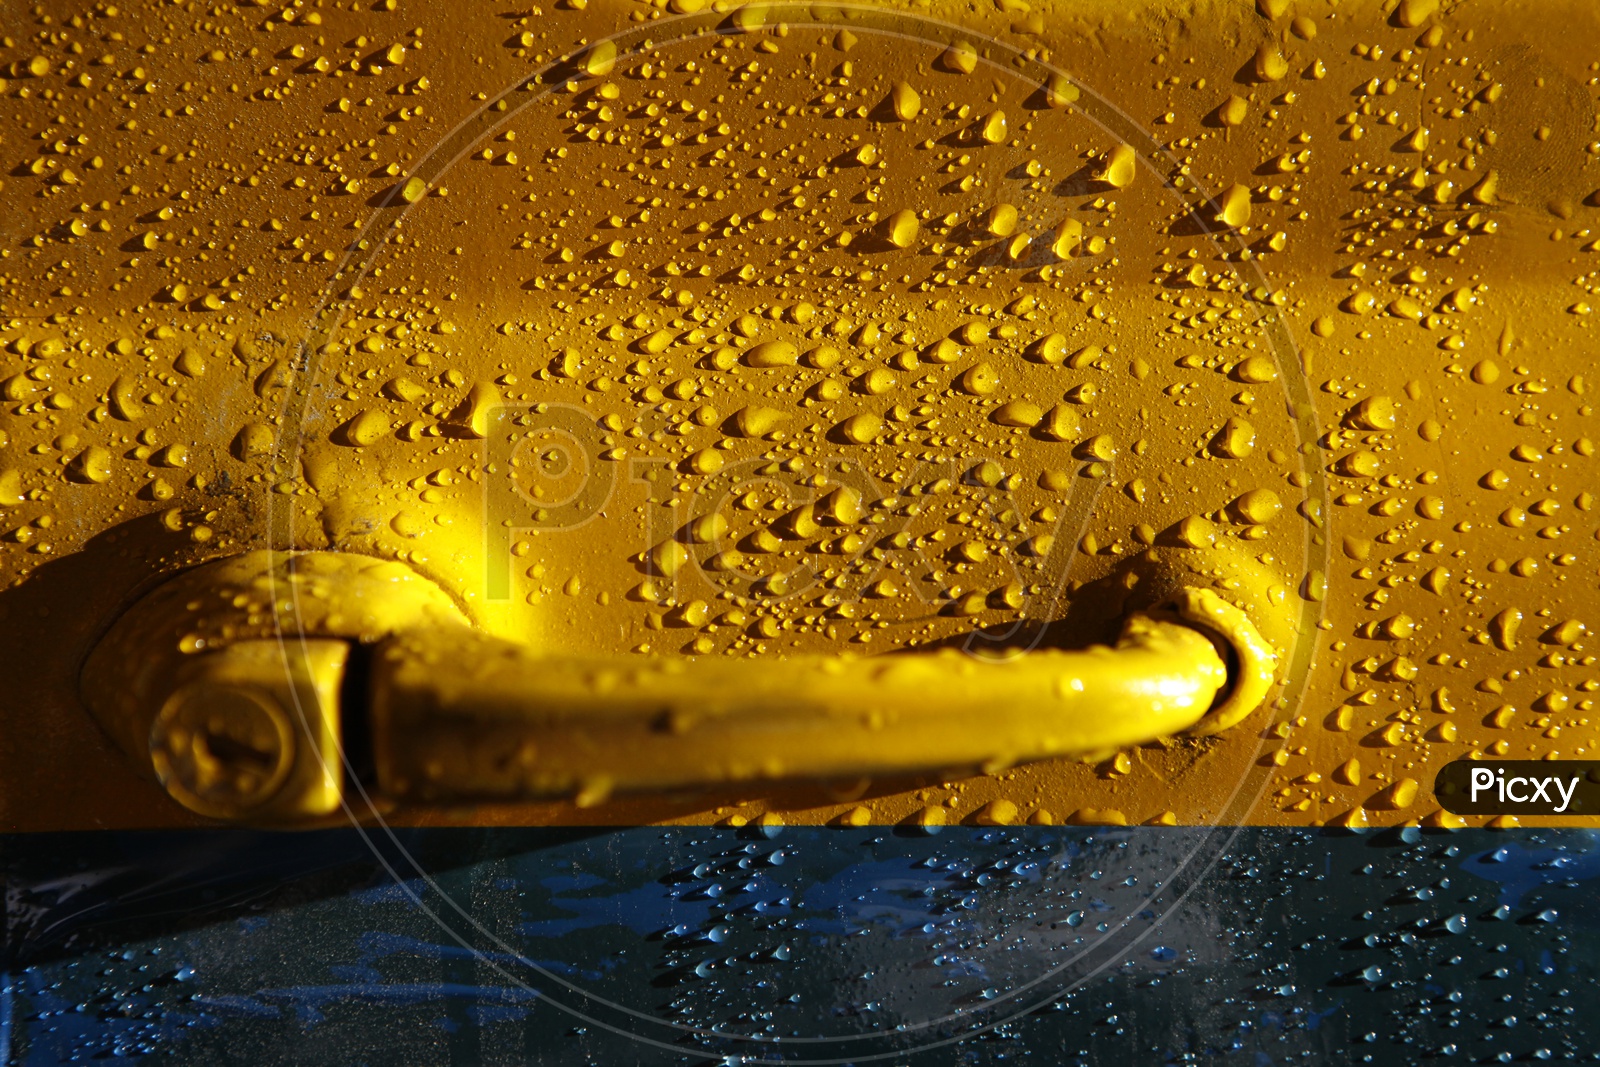 Water Droplets On a Car Door Closeup Shot